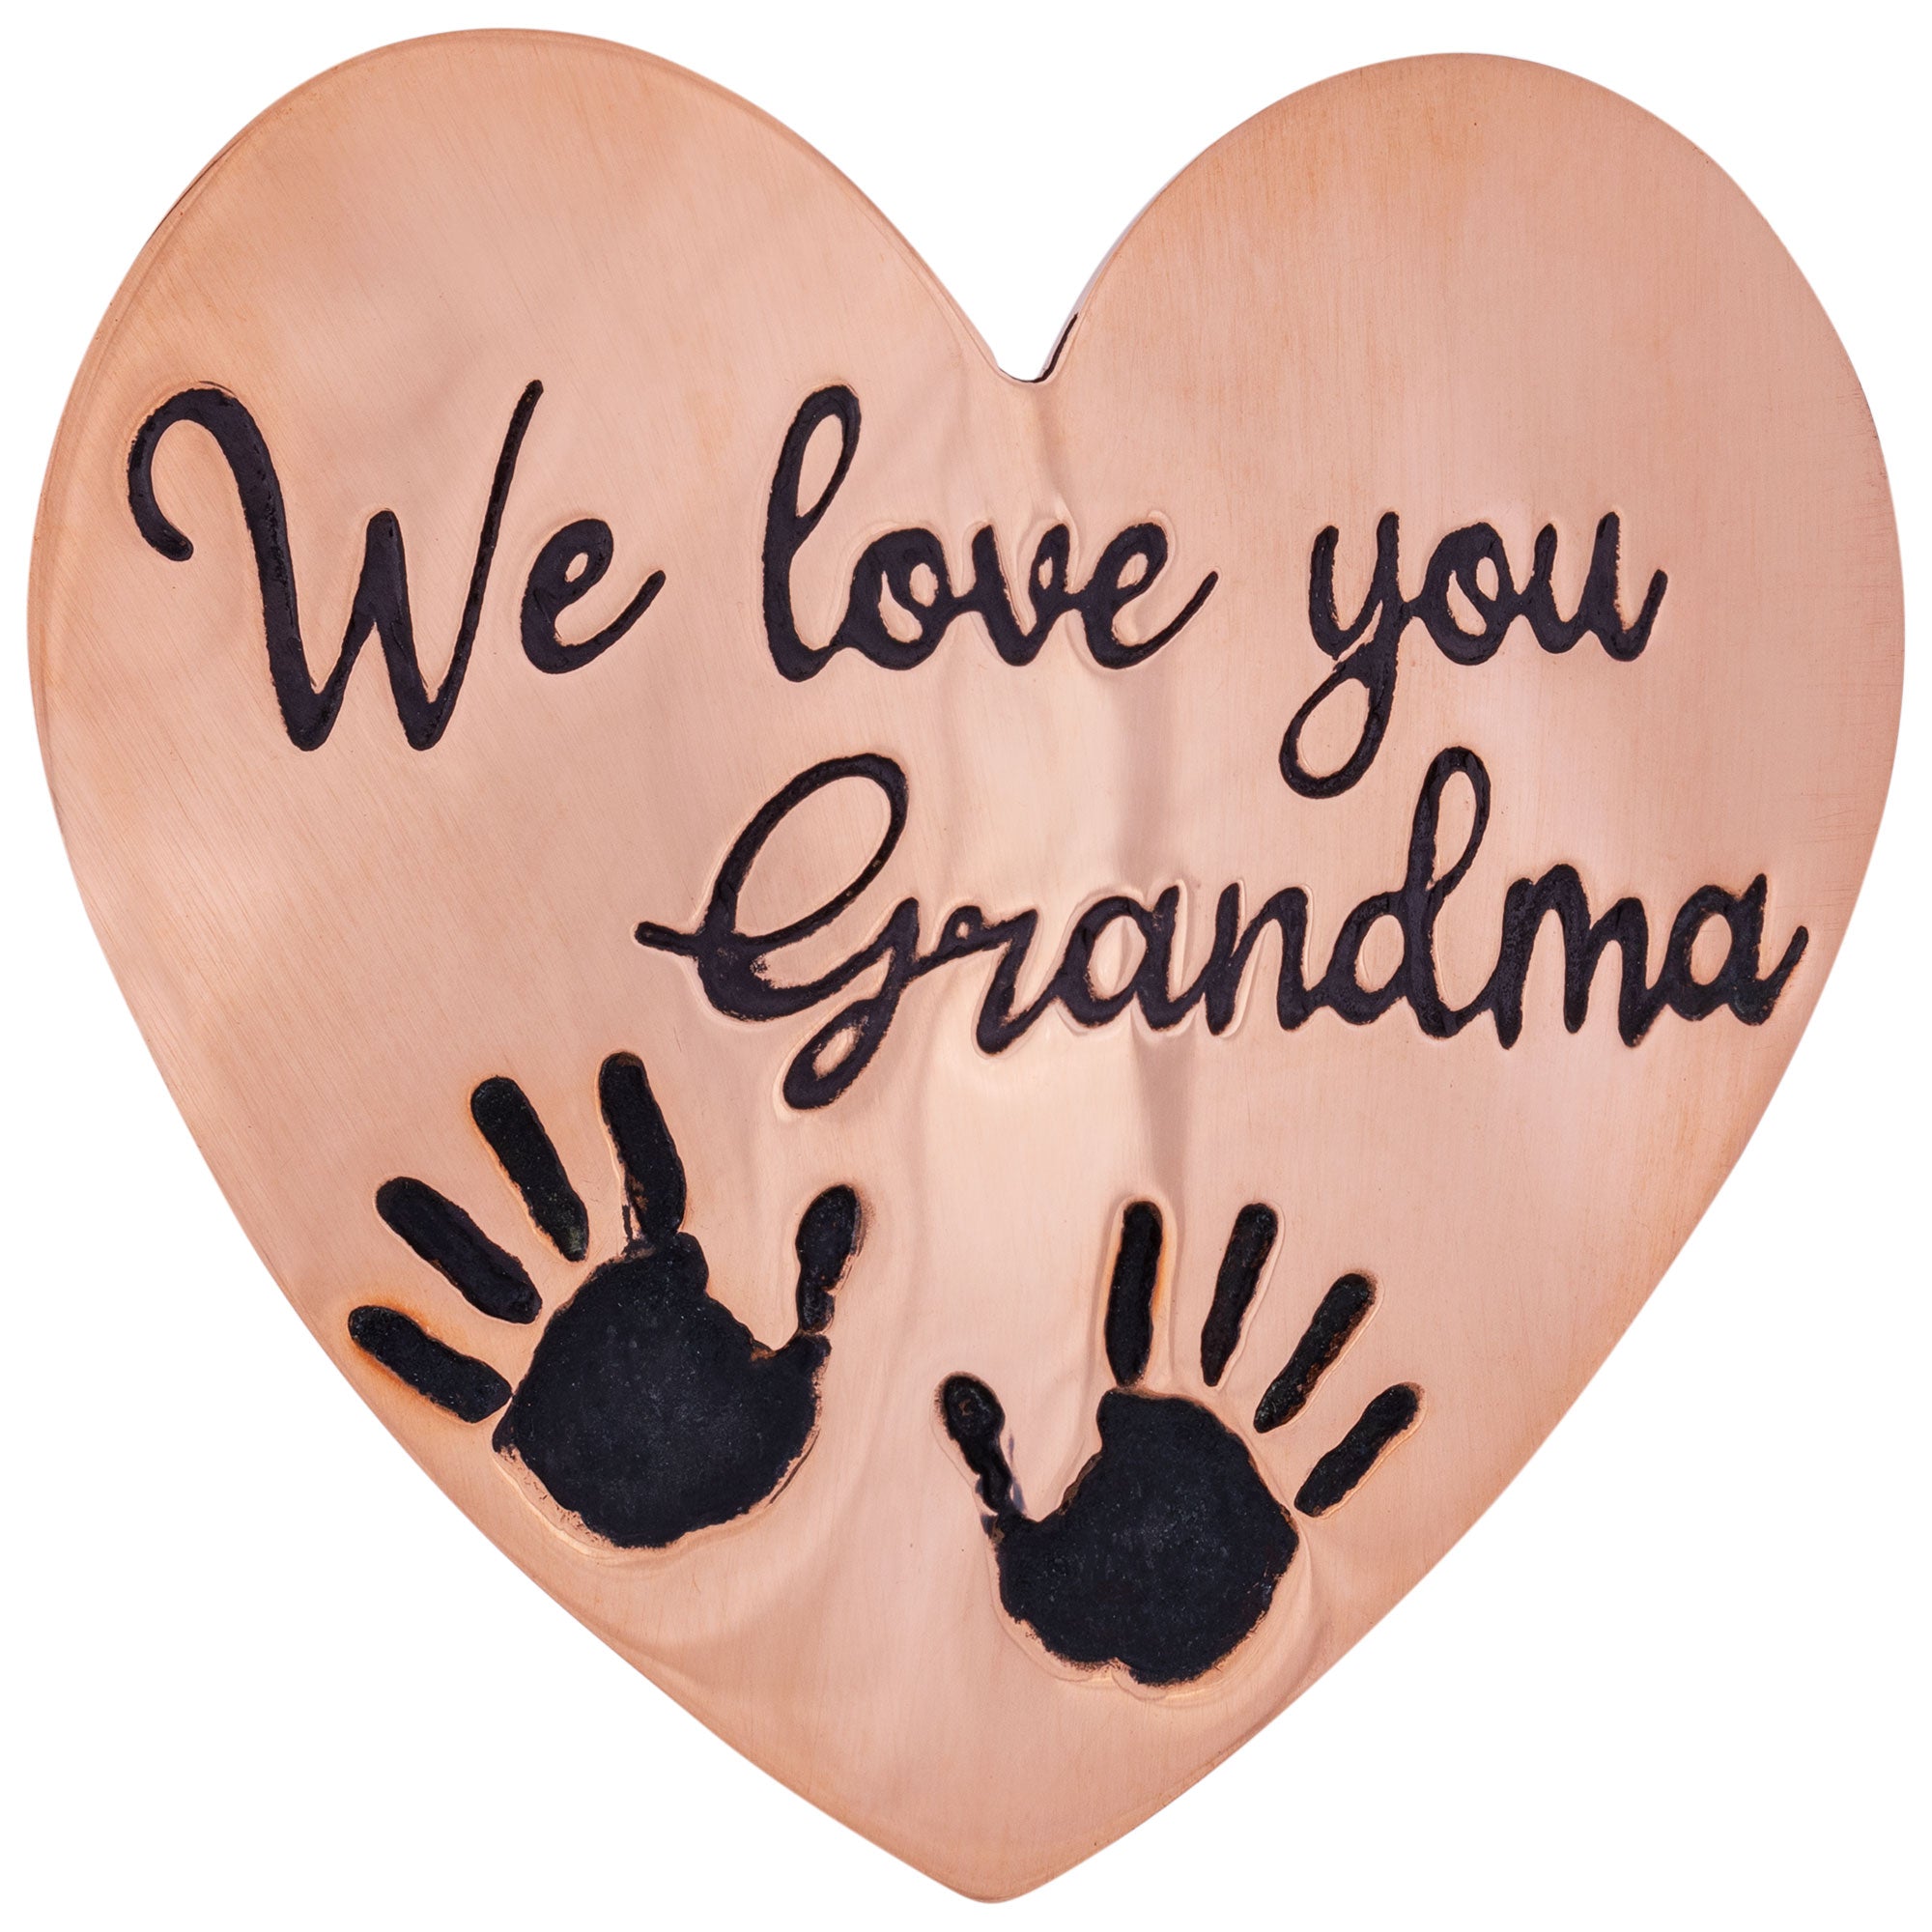 We Love Grandma Pin - We Love You Grandma